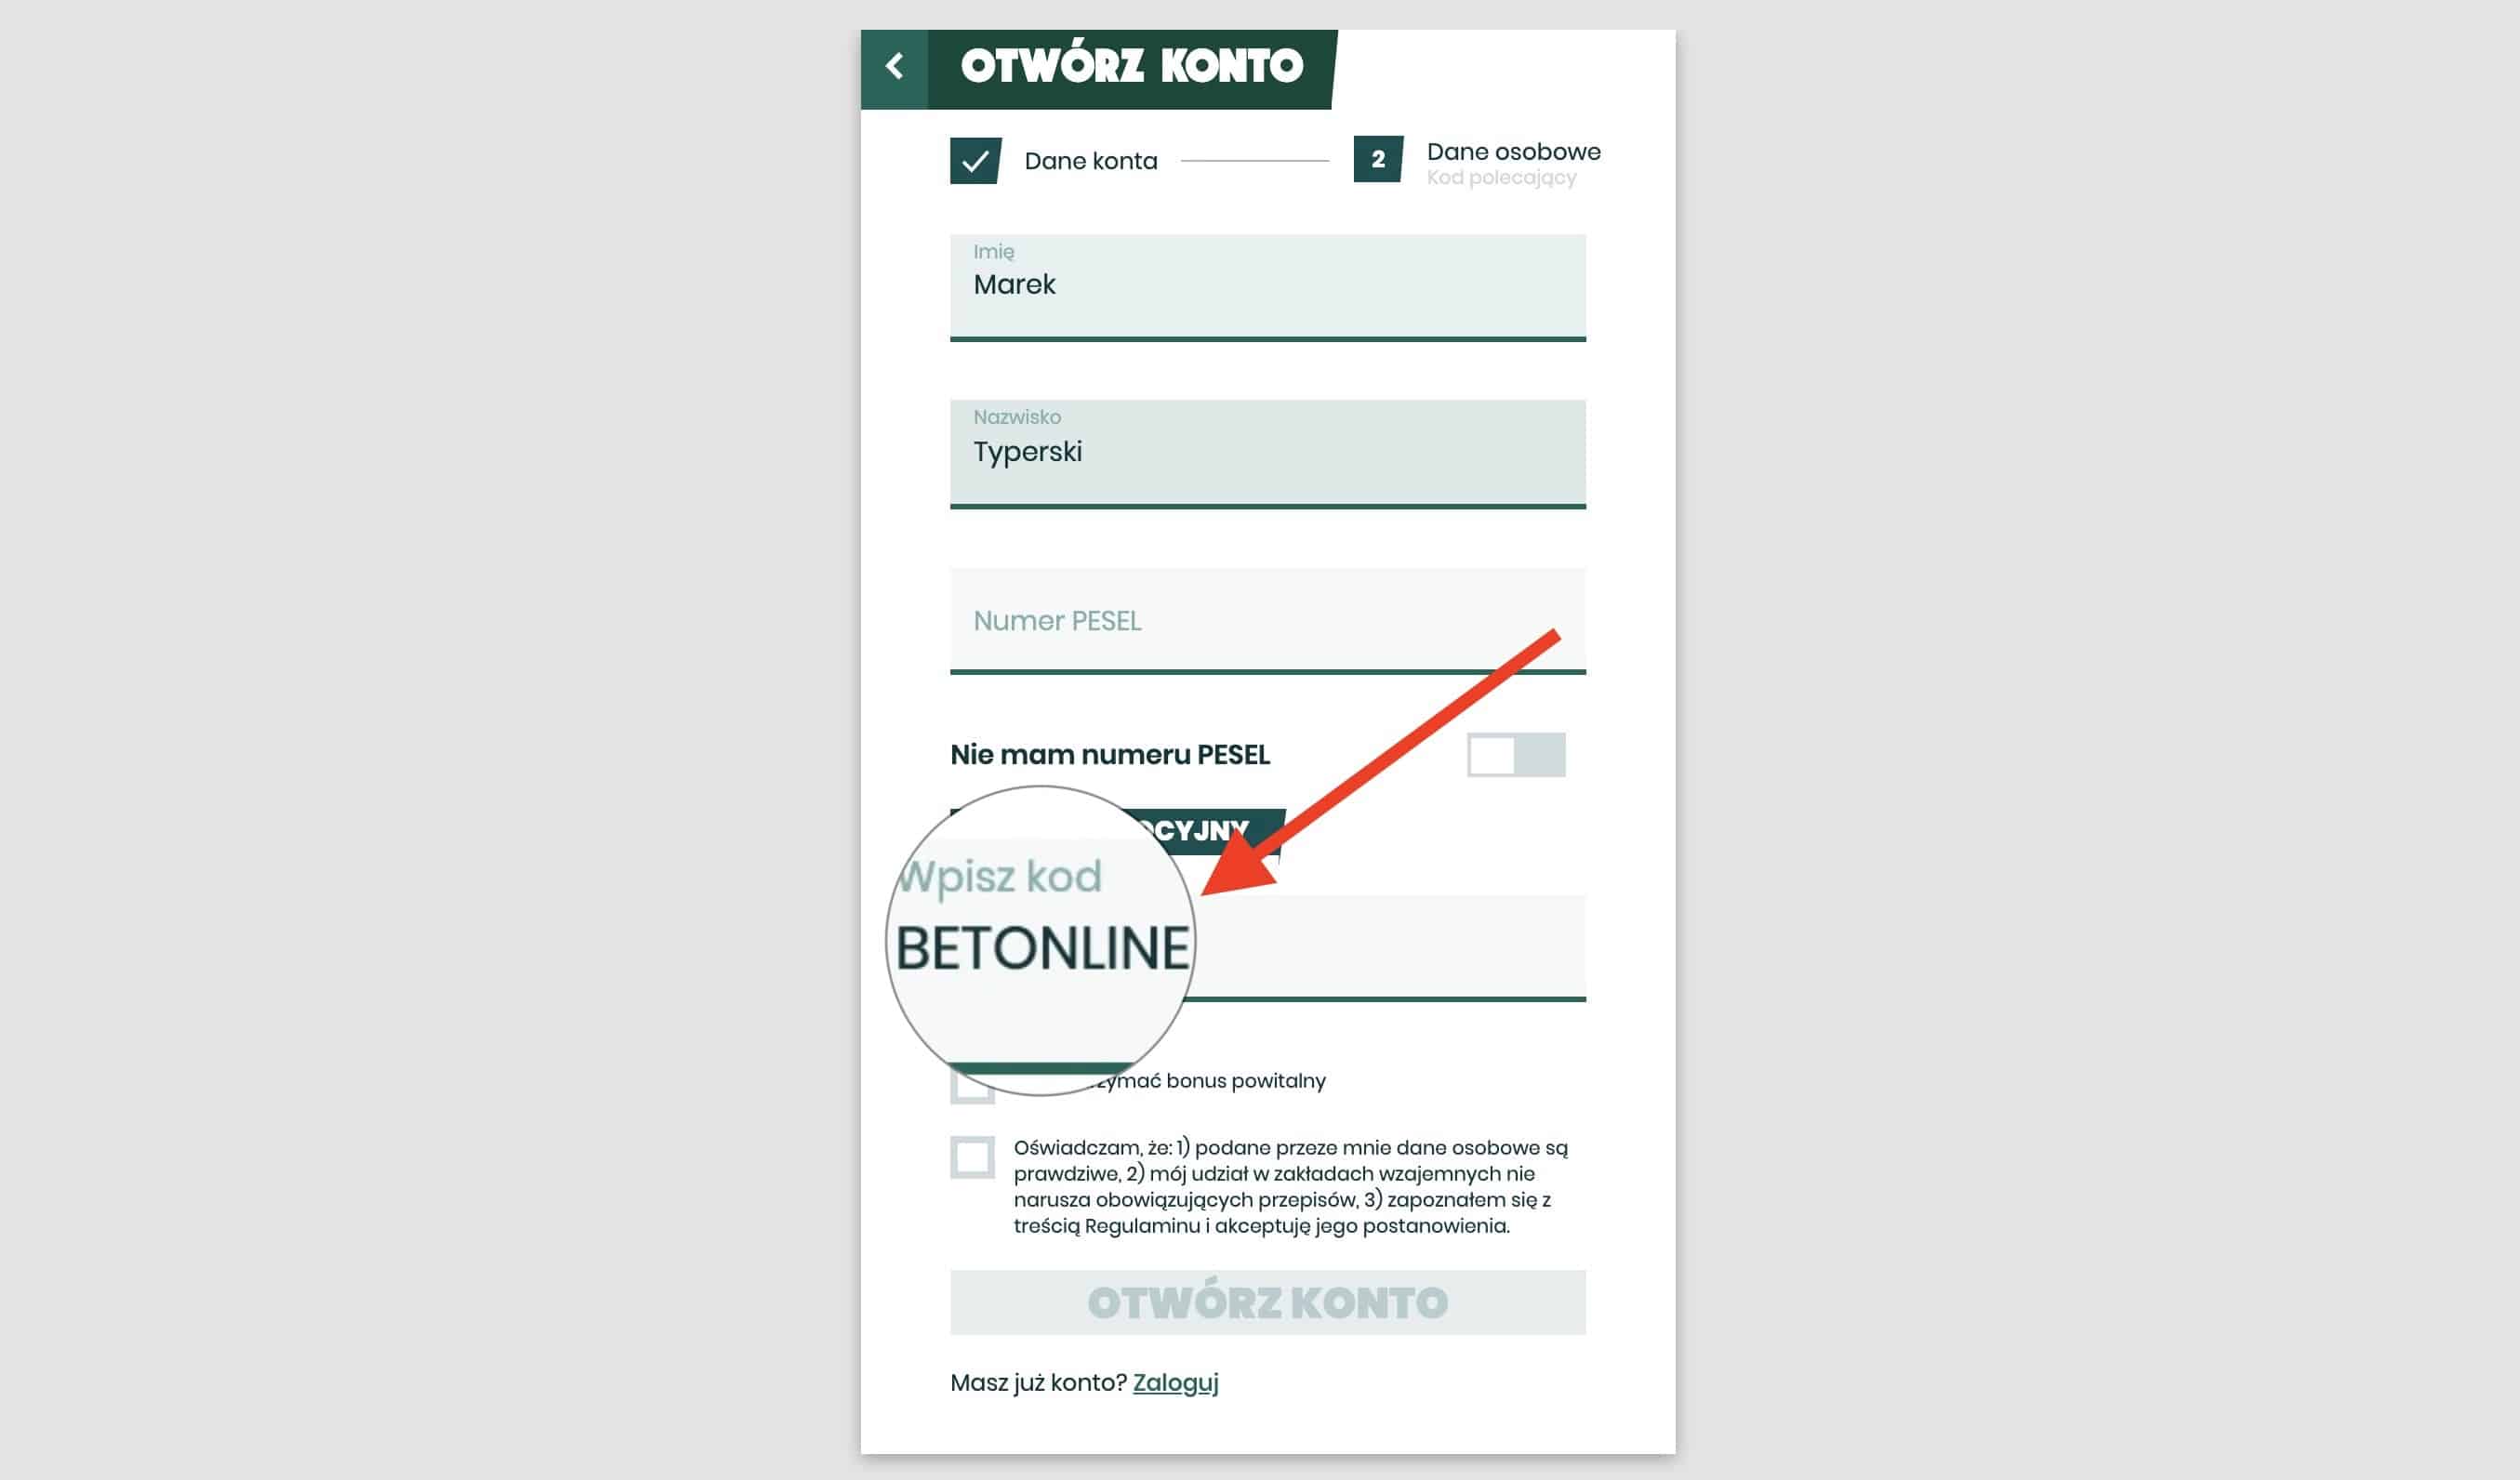 Co daje kod "BETONLINE" w Betfan?